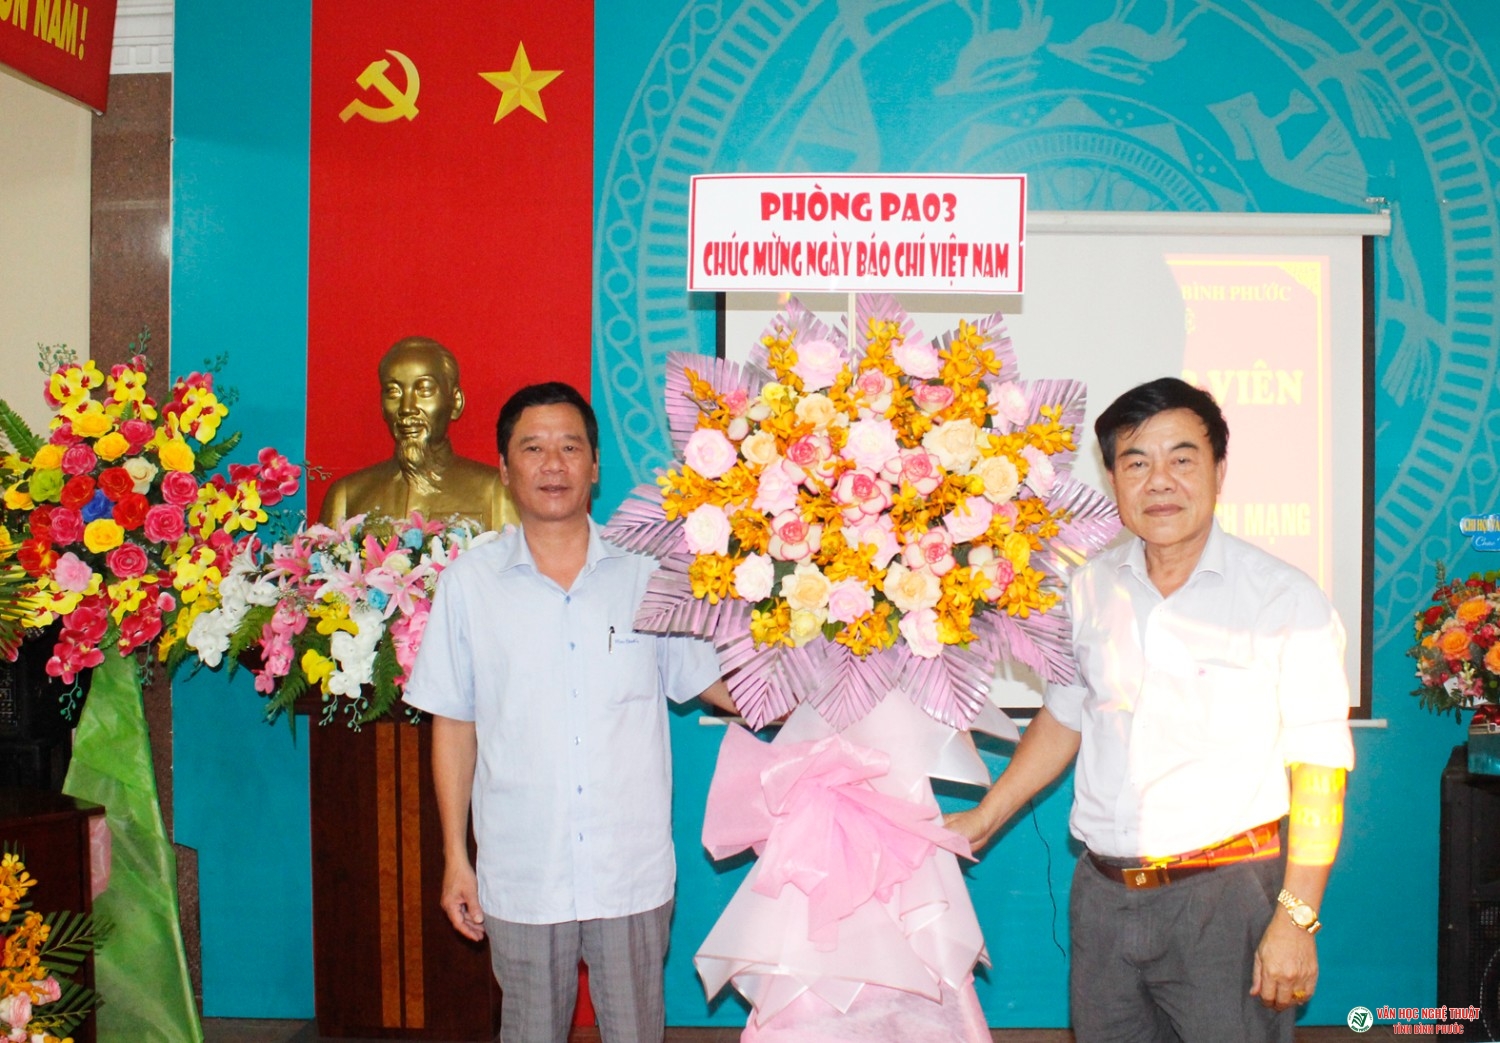 Họp mặt cộng tác viên nhân dịp kỷ niệm 97 năm Ngày báo chí cách mạng Việt Nam (21/6/1925-21/6/2022)